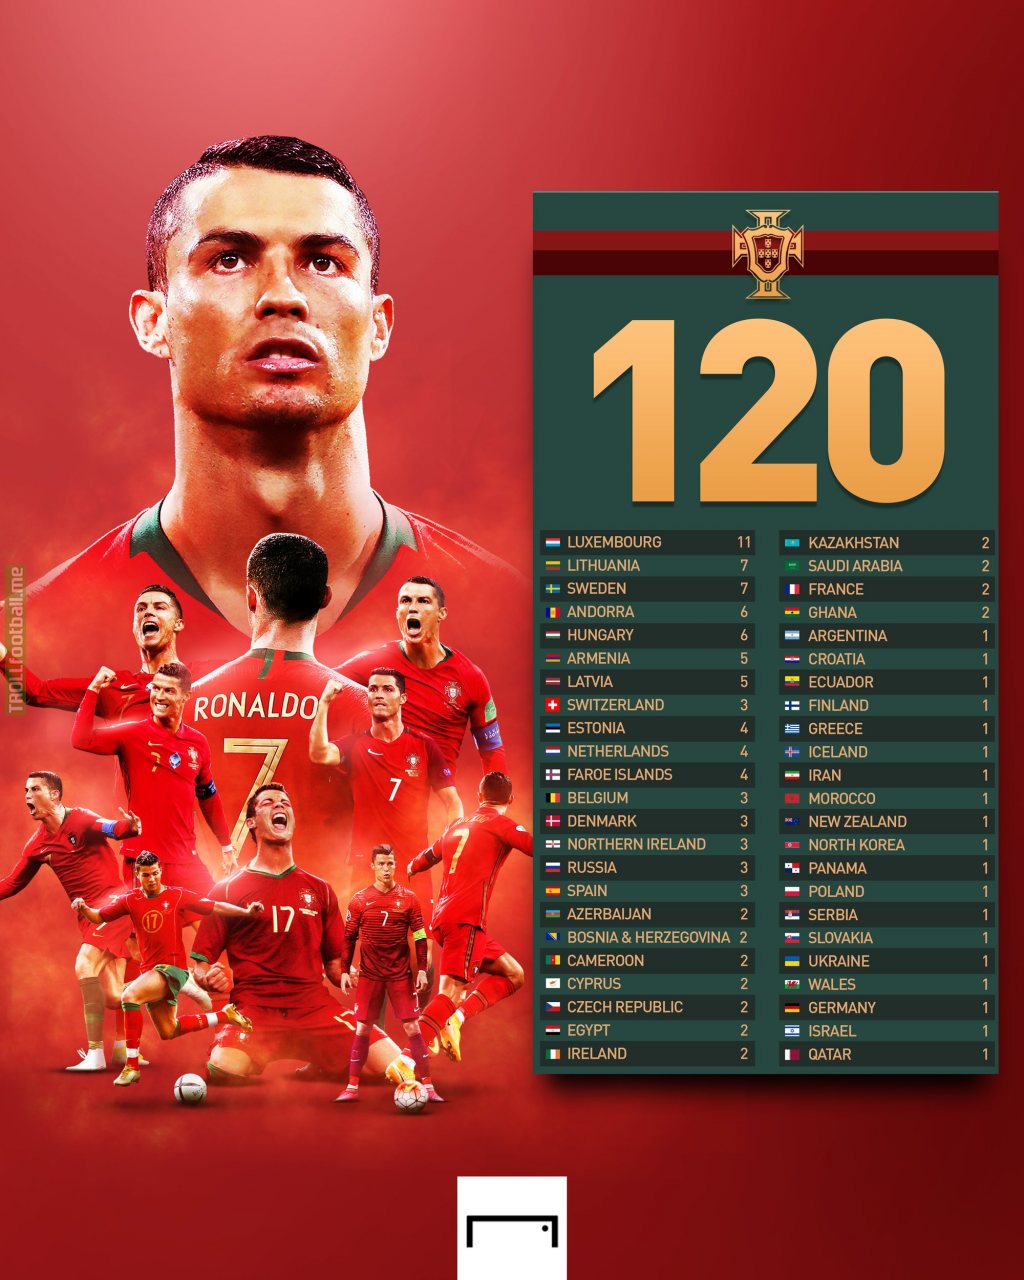 A breakdown of Cristiano Ronaldo's 120 goals for Portugal